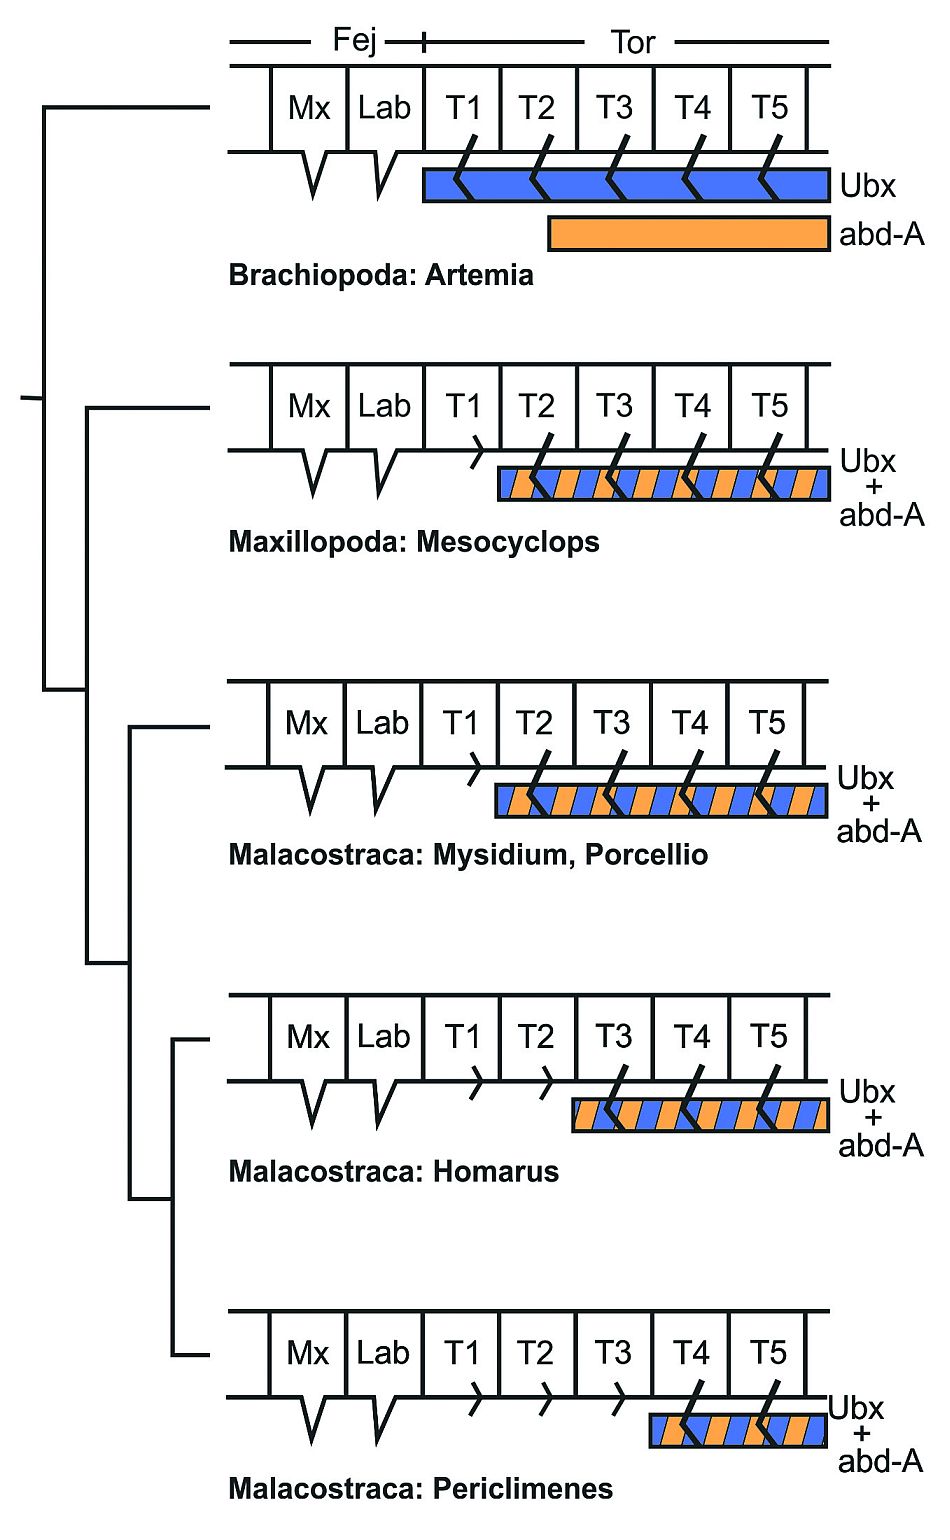 Az Ubx és abd-A proteinek expressziós doménjei a különböző rákcsoportok alatt kékkel ill. lilával vannak feltüntetve A legegyszerűbb rákok (Artemia, felül) a tor szegmenseiben mutatnak Ubx kifejeződést. Más rákok esetében, amelyek egy, két vagy három pár specializált maxillopediával rendelkeznek a tor elülső szelvényeiben (kisebb tori végtagként jelölve), határozottan hátrébb van az Ubx expresszió hátsó határa. A kék és lila sávok a Maxillopoda és Malacostraca alosztályokban az Ubx és abd-A expresszálódó doménjeinek összességét jelölik. Mx=maxilláris Lab=ajak T=thorakális